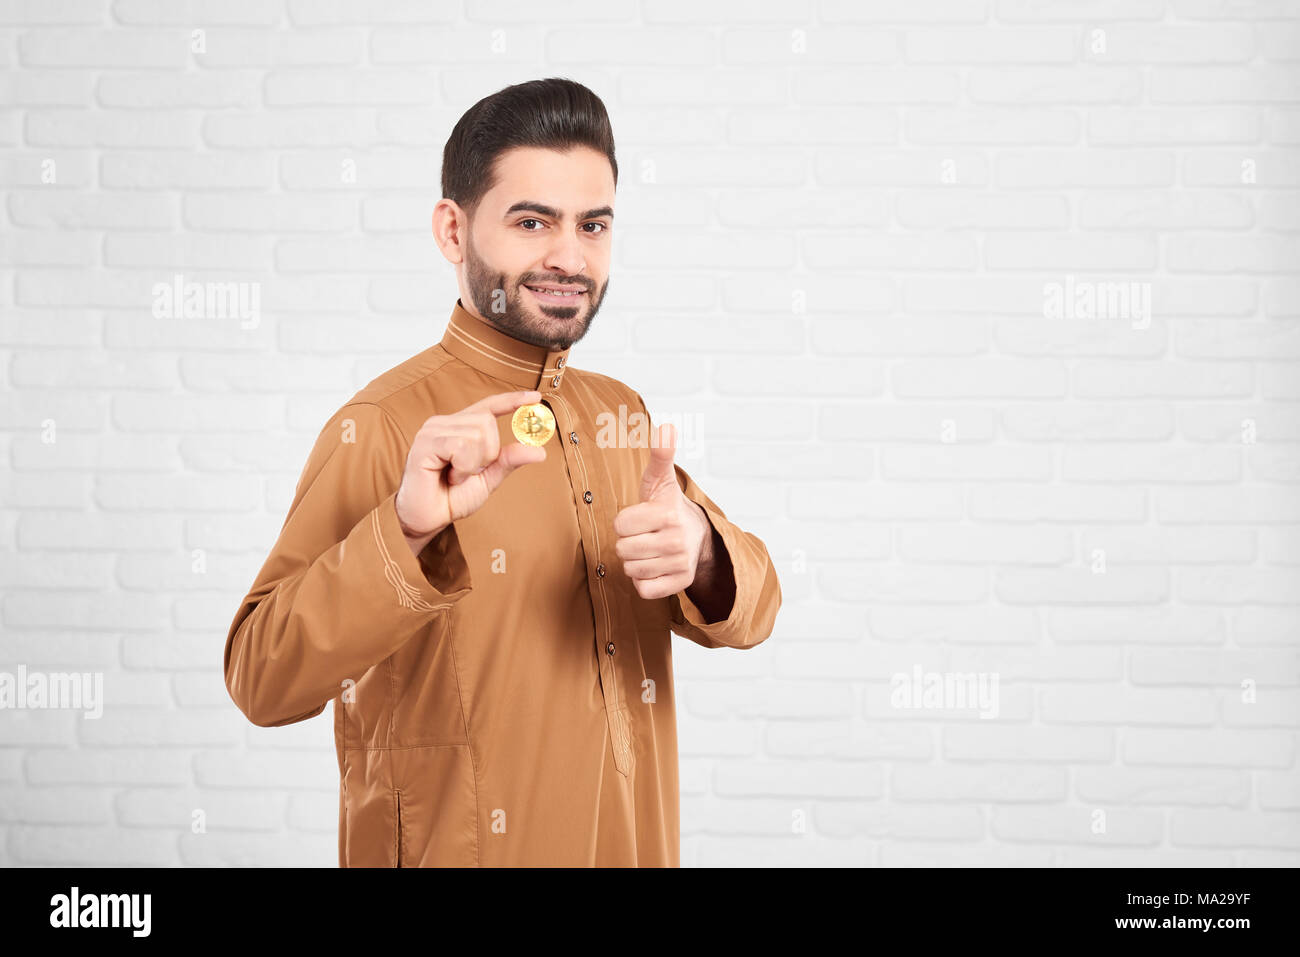 Les jeunes musulmans attrayant modèle masculin dans les vêtements islamiques d'être heureux de présenter et bitcoin or Thumbs up in front of blurred white brick wall. Plan horizontal. Banque D'Images